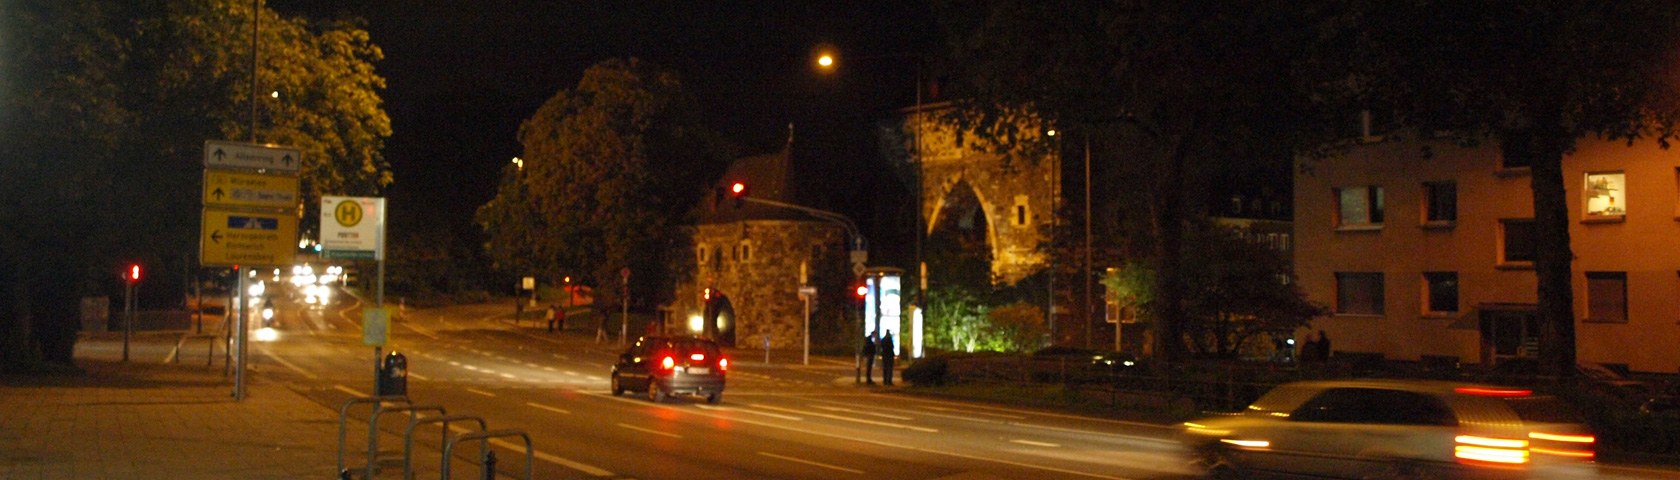 Der Pontwall in Aachen bei Nacht